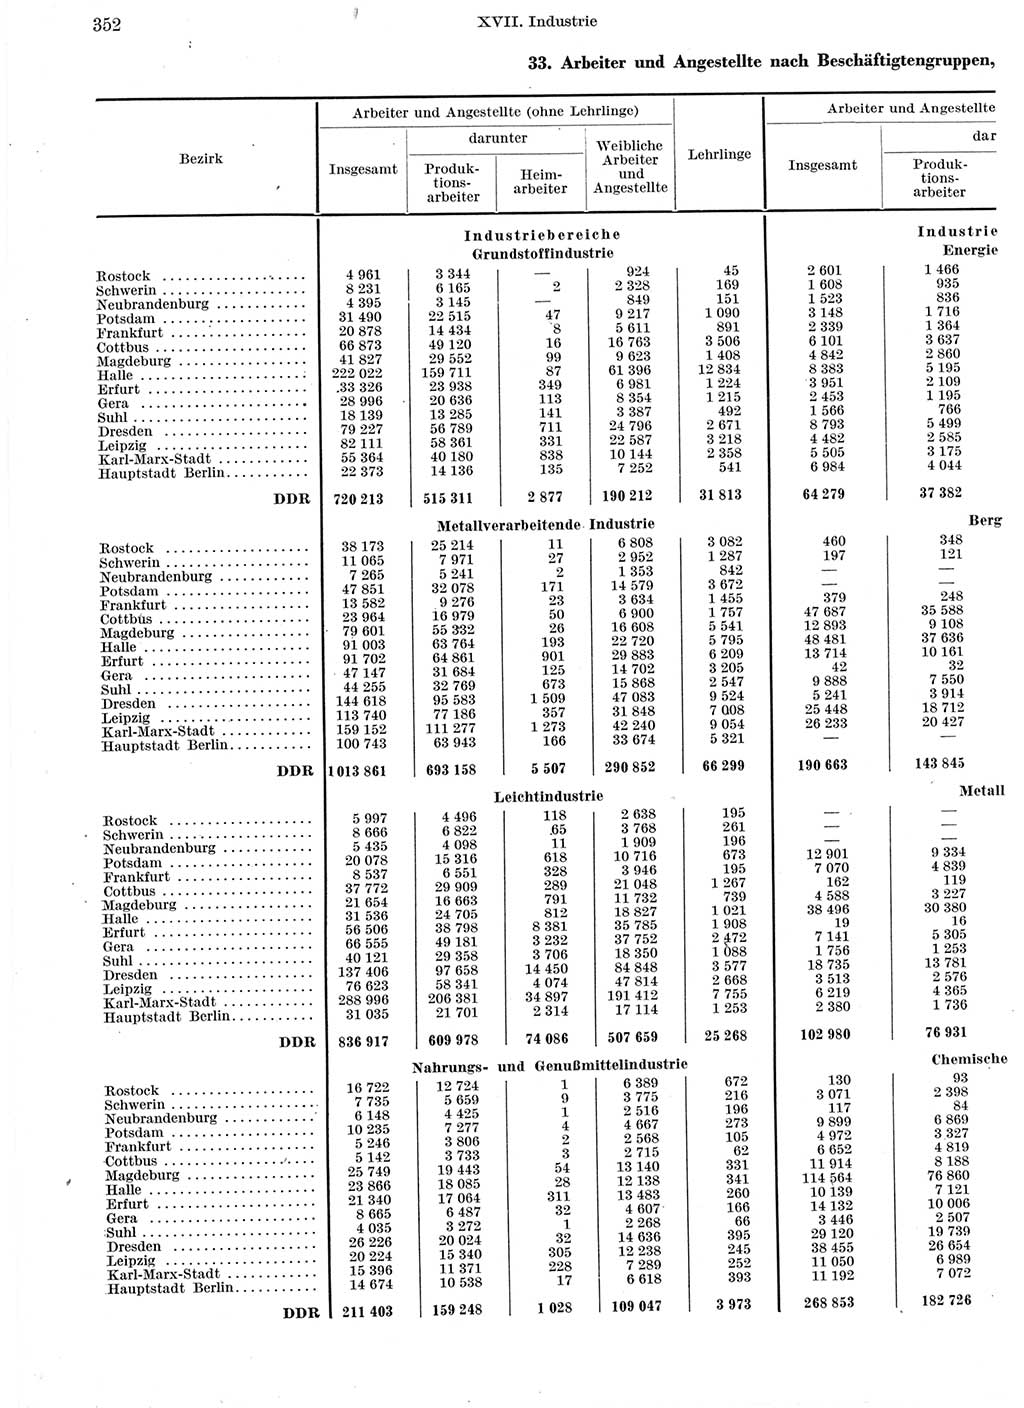 Statistisches Jahrbuch der Deutschen Demokratischen Republik (DDR) 1960-1961, Seite 352 (Stat. Jb. DDR 1960-1961, S. 352)